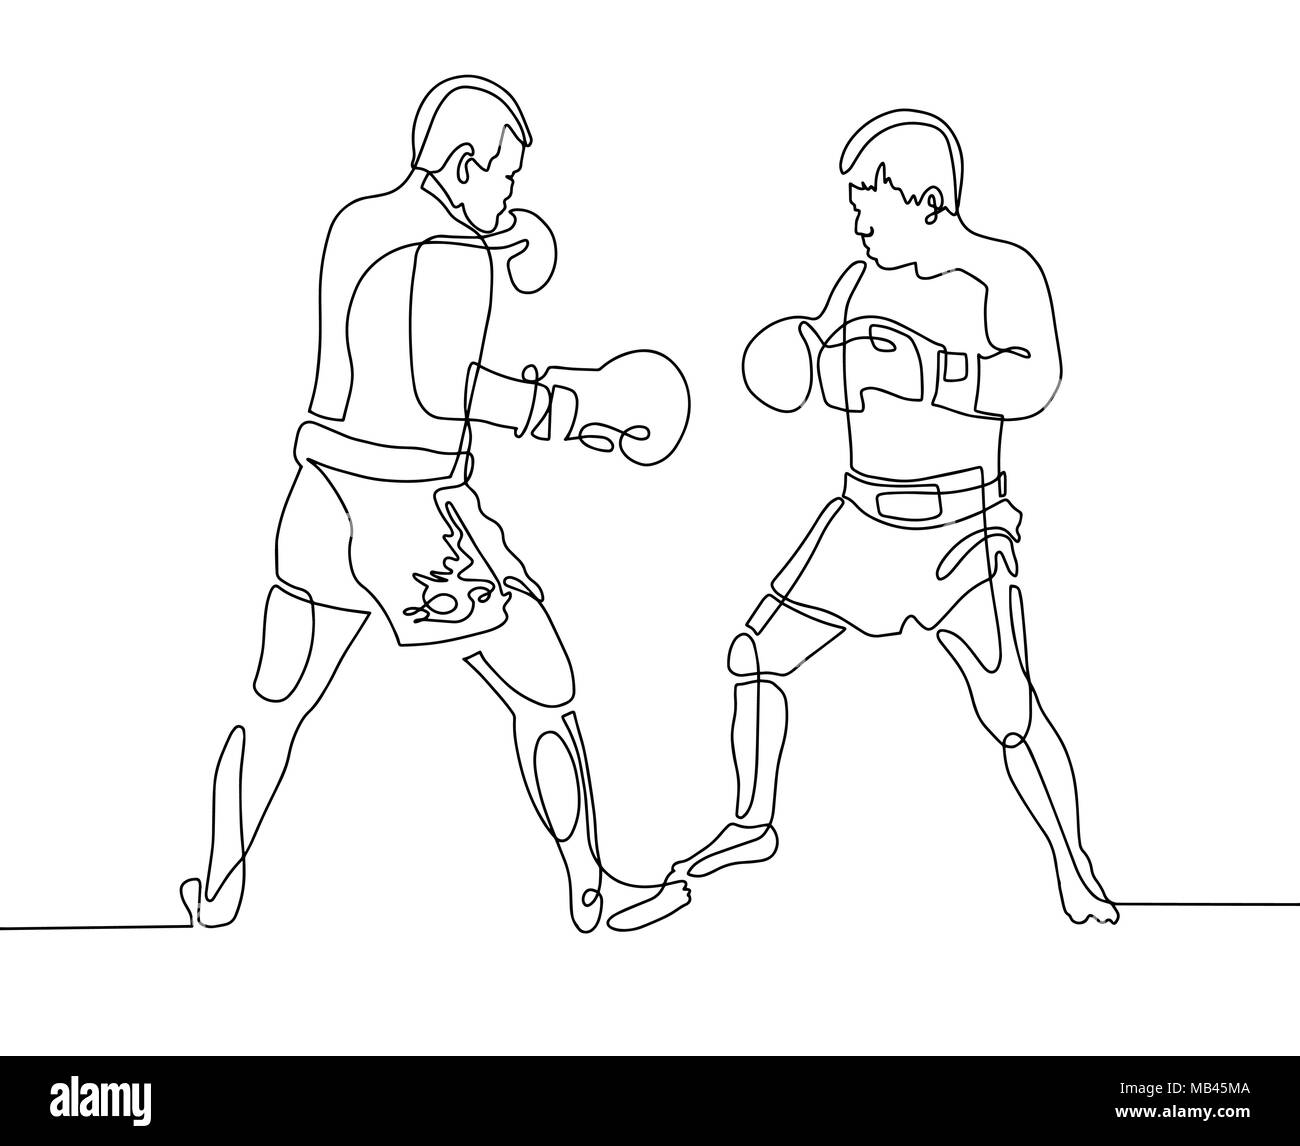 Dessin d'une ligne continue deux boxeurs sur le ring Illustration de Vecteur